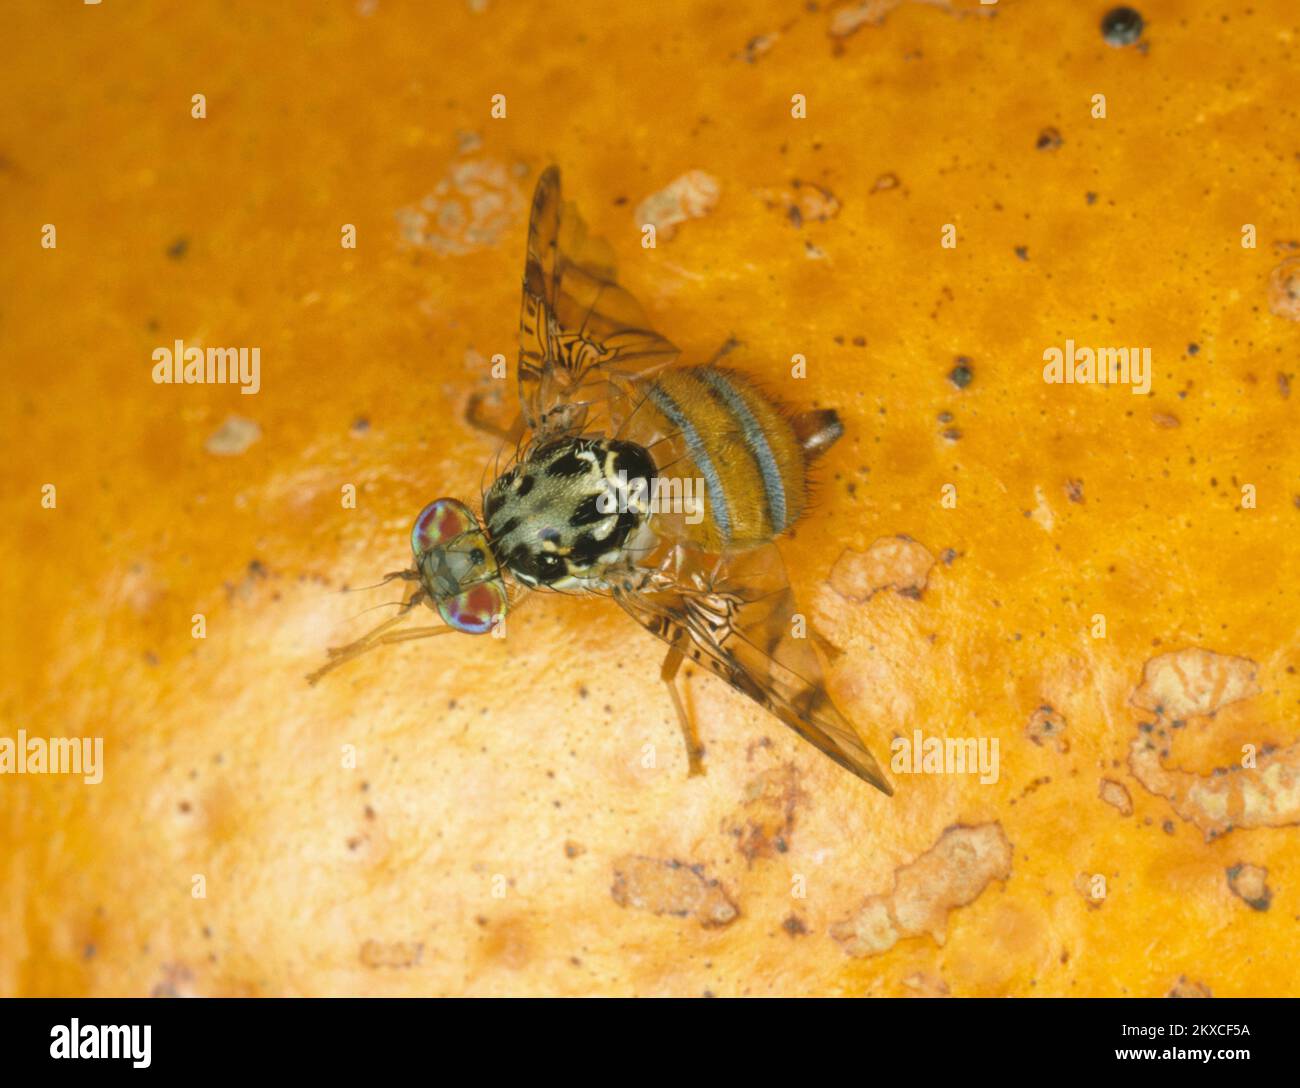 Mosca mediterránea de la fruta (Ceratitis capitata) plaga de cítricos de la mosca del adulto con pose típica del ala en la fruta naranja, características claramente marcadas Foto de stock